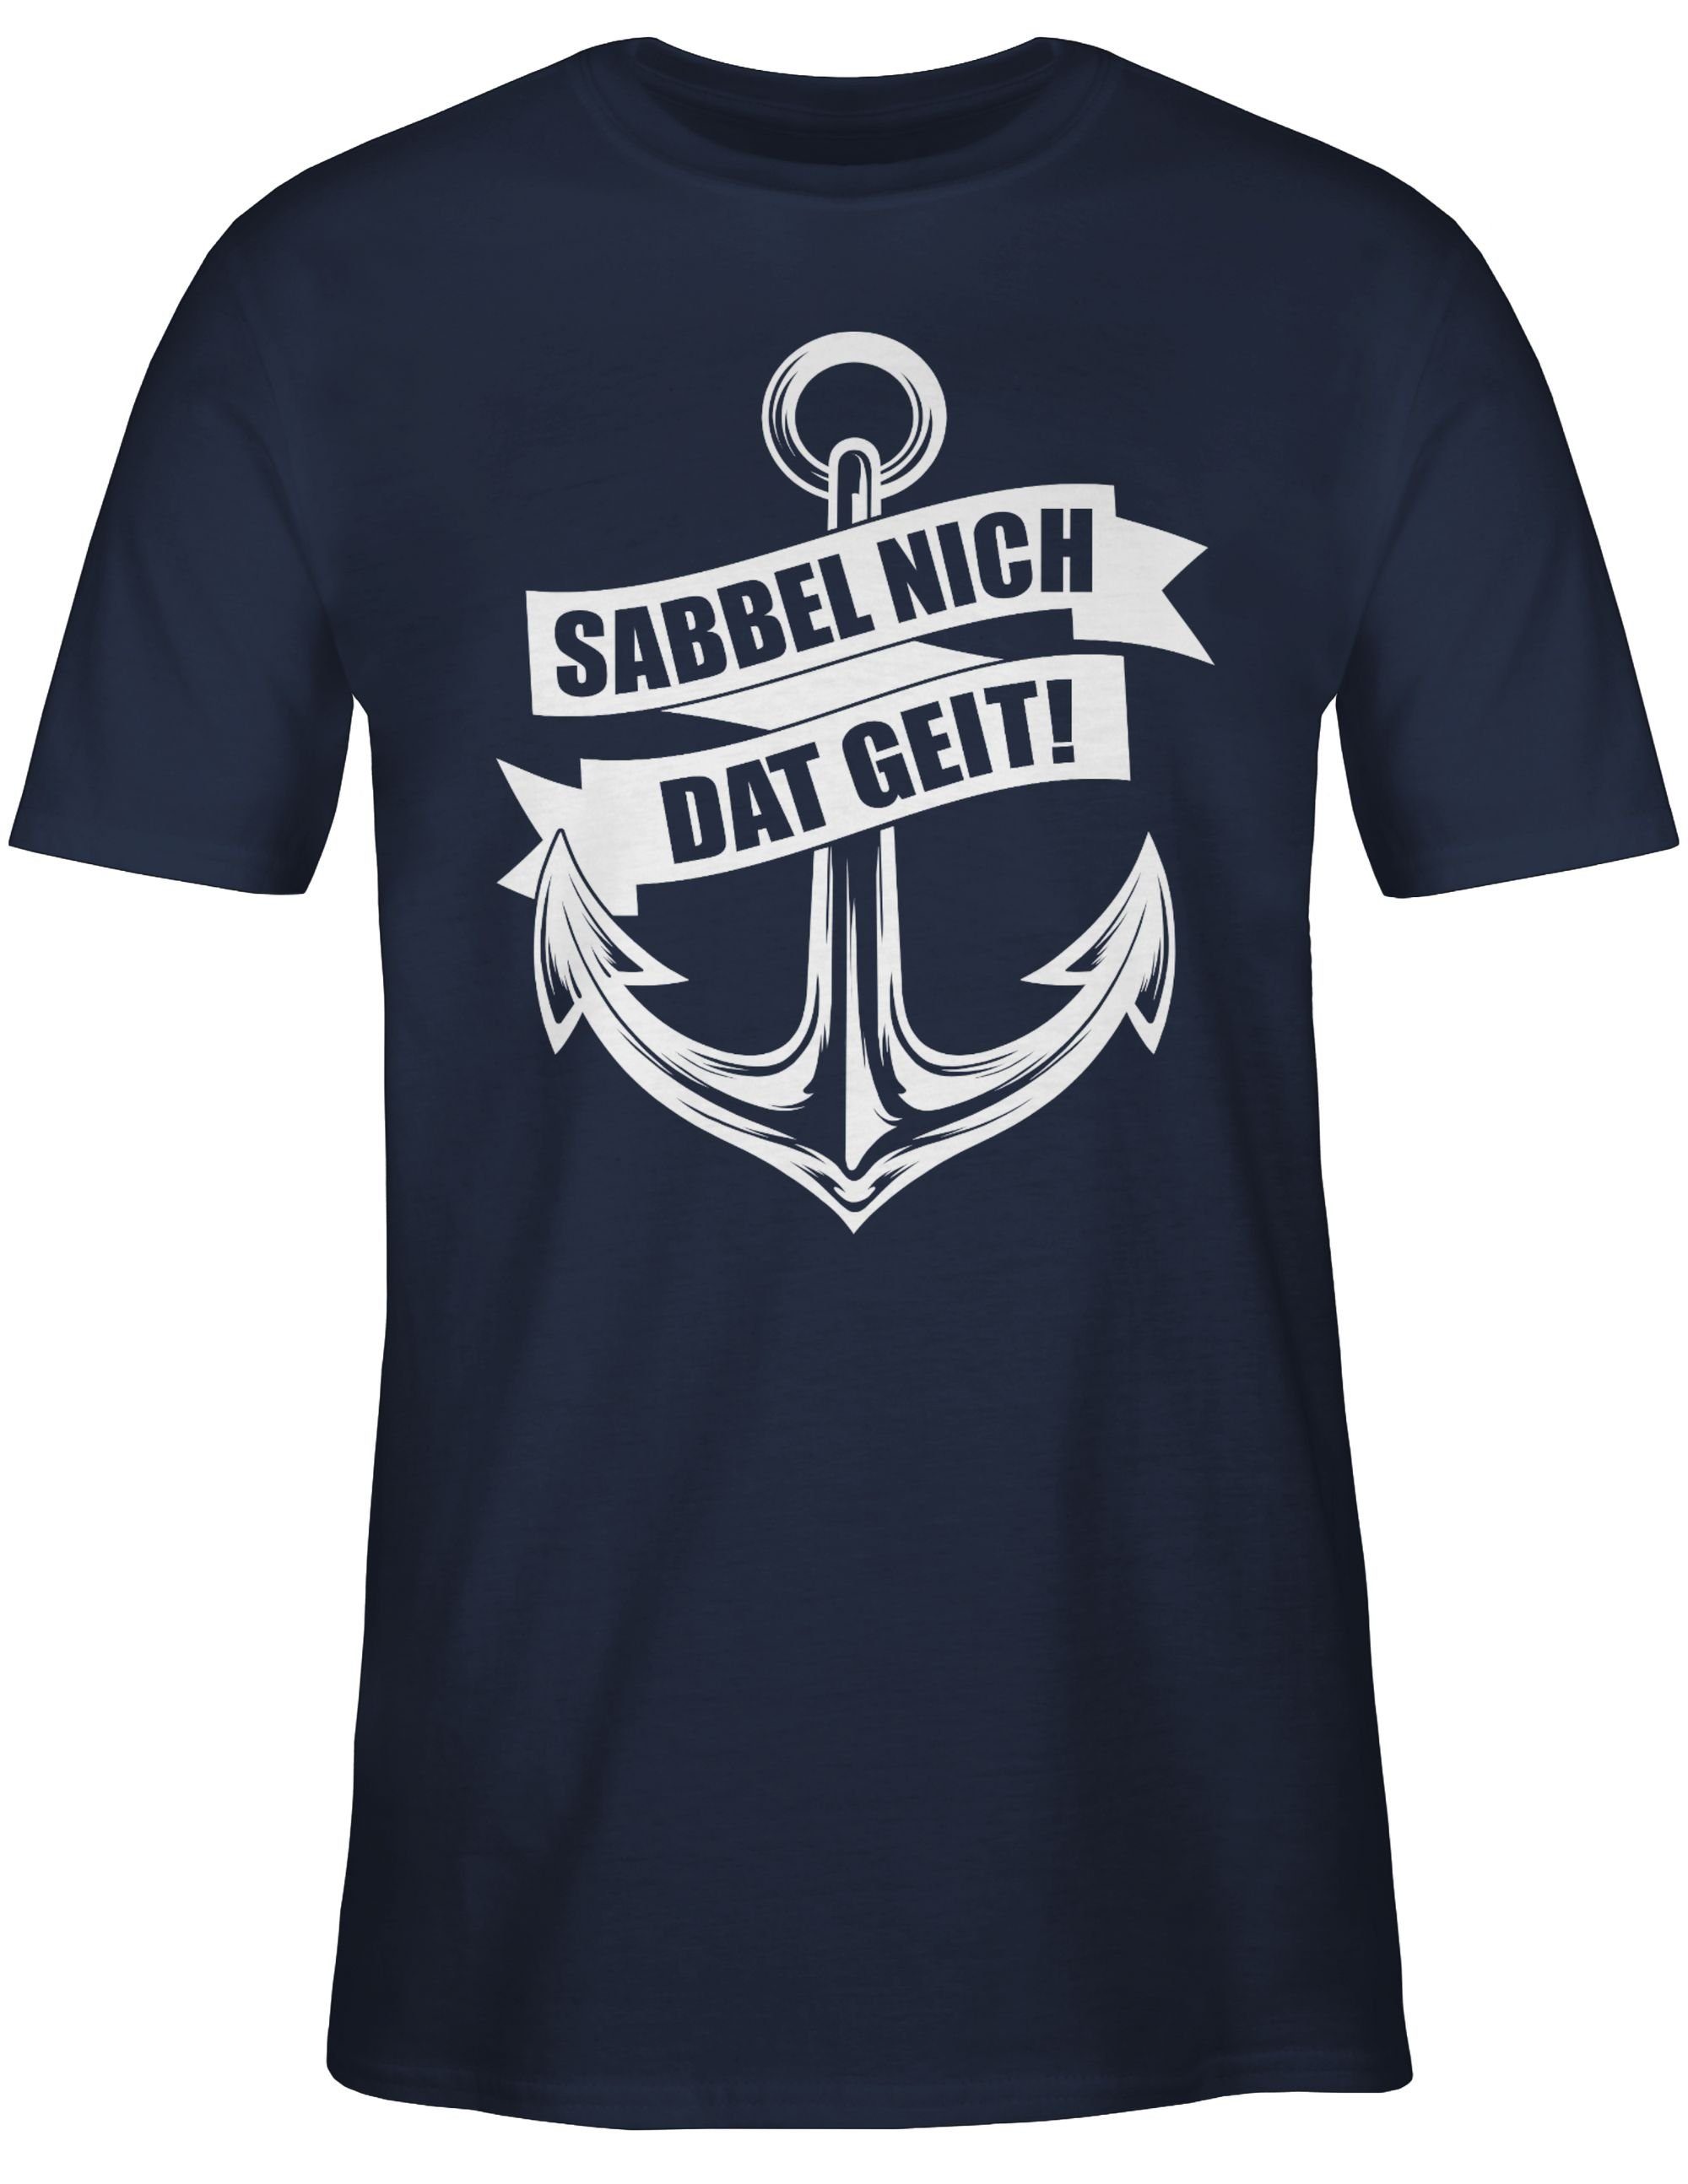 Shirtracer T-Shirt Sabbel nich dat weiß Statement Sprüche geit! 02 - Navy Blau